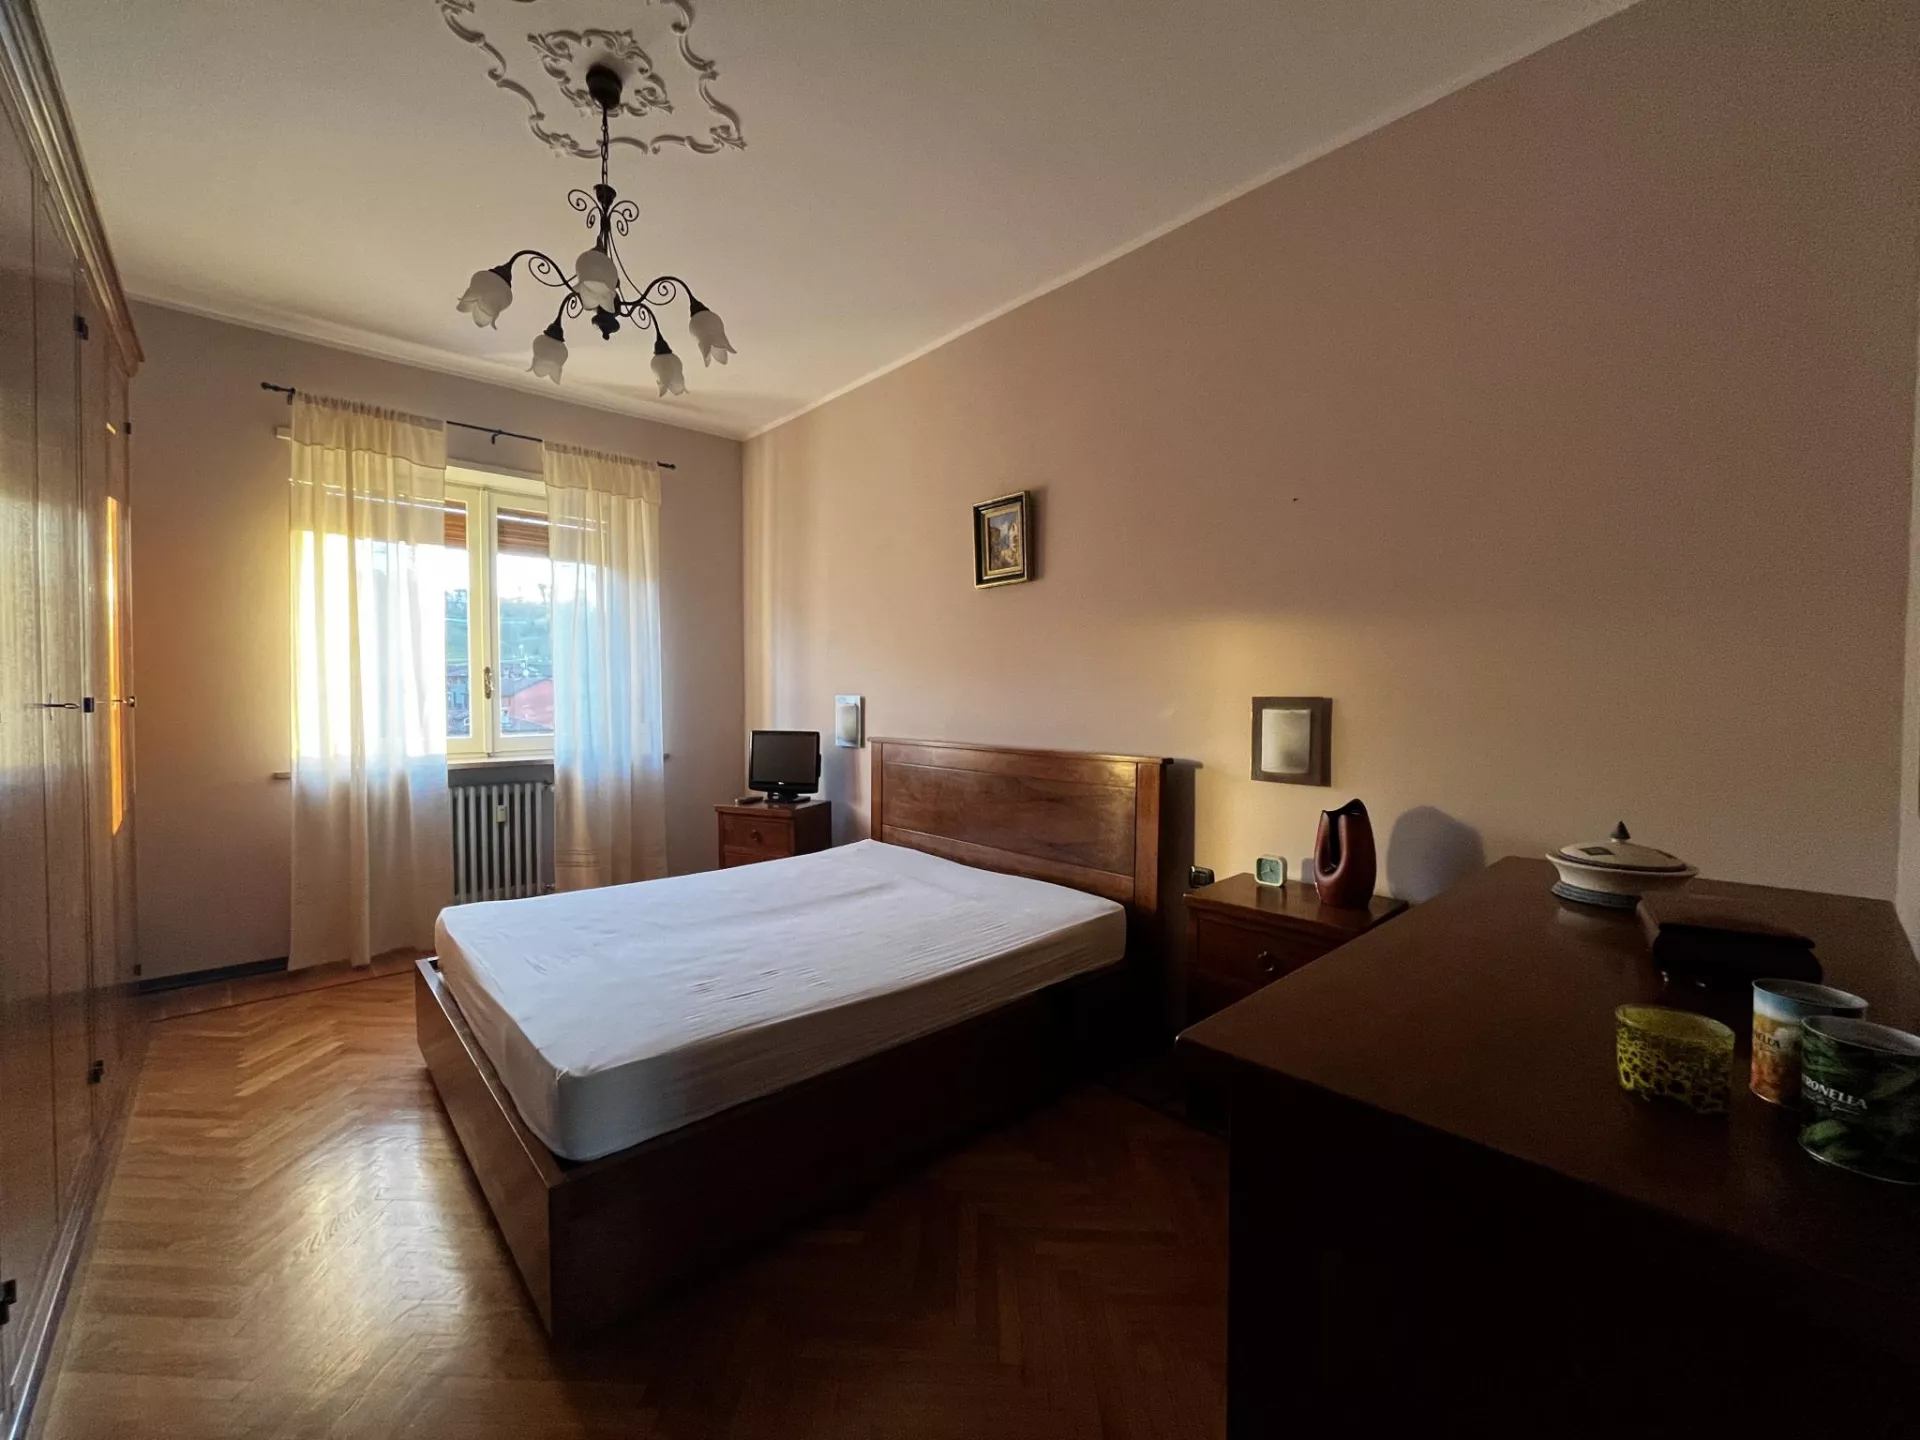 Immagine per Appartamento in affitto a Saluzzo corso Piemonte 78